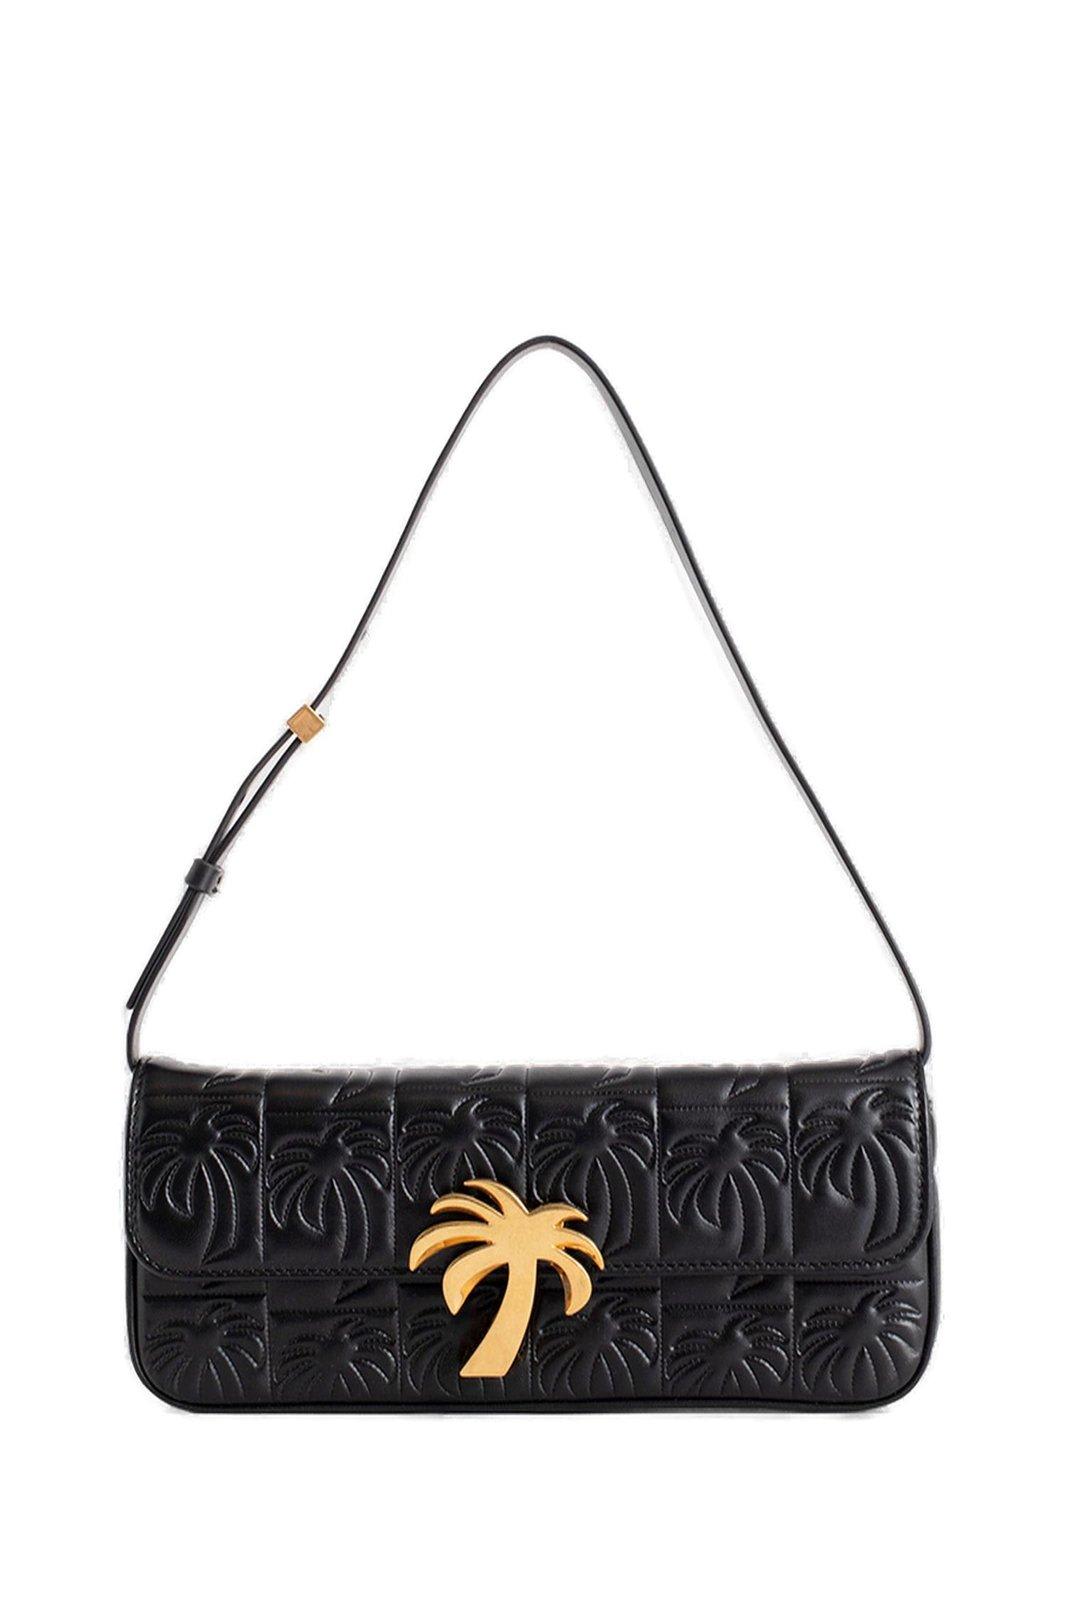 Shop Palm Angels Palm Tree Plaque Foldover Top Shoulder Bag In Black